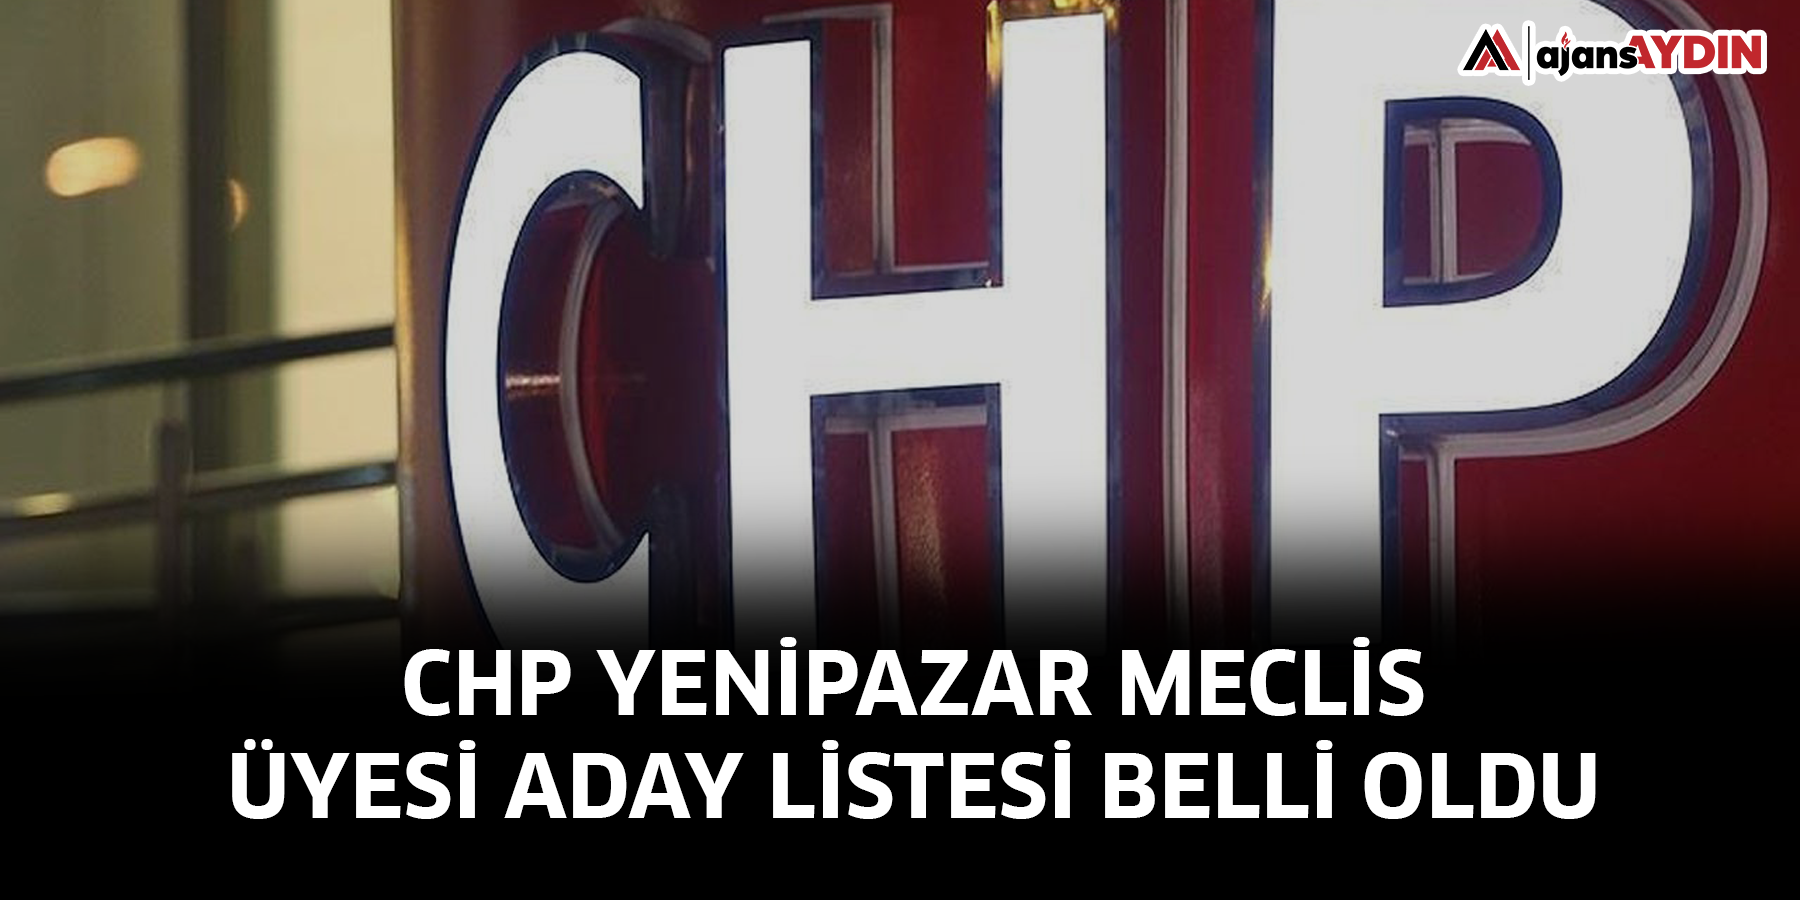 CHP Yenipazar Meclis Üyesi aday listesi belli oldu